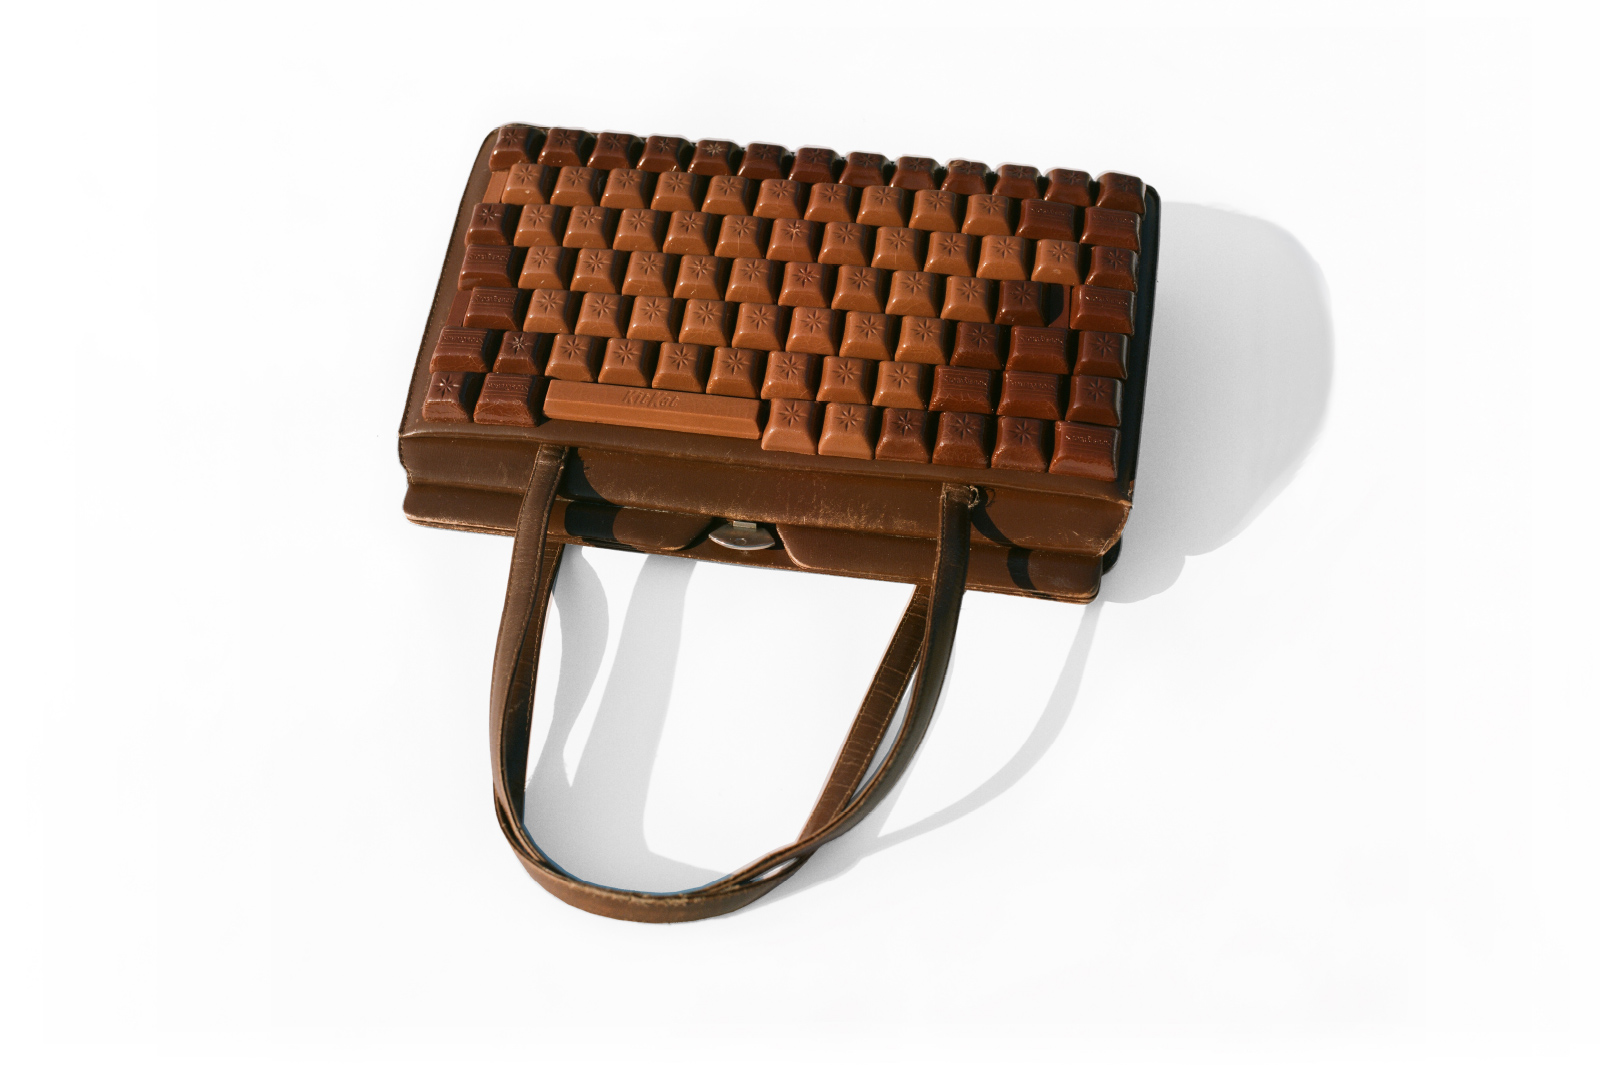 Kunst-Objekt von Josephine Riemann: Das elektronische Gerät ‚Laptop‘ ist hier als braune Damenhandtasche aufgefasst worden. Die Tasten bestehen aus Schokoladestücken.